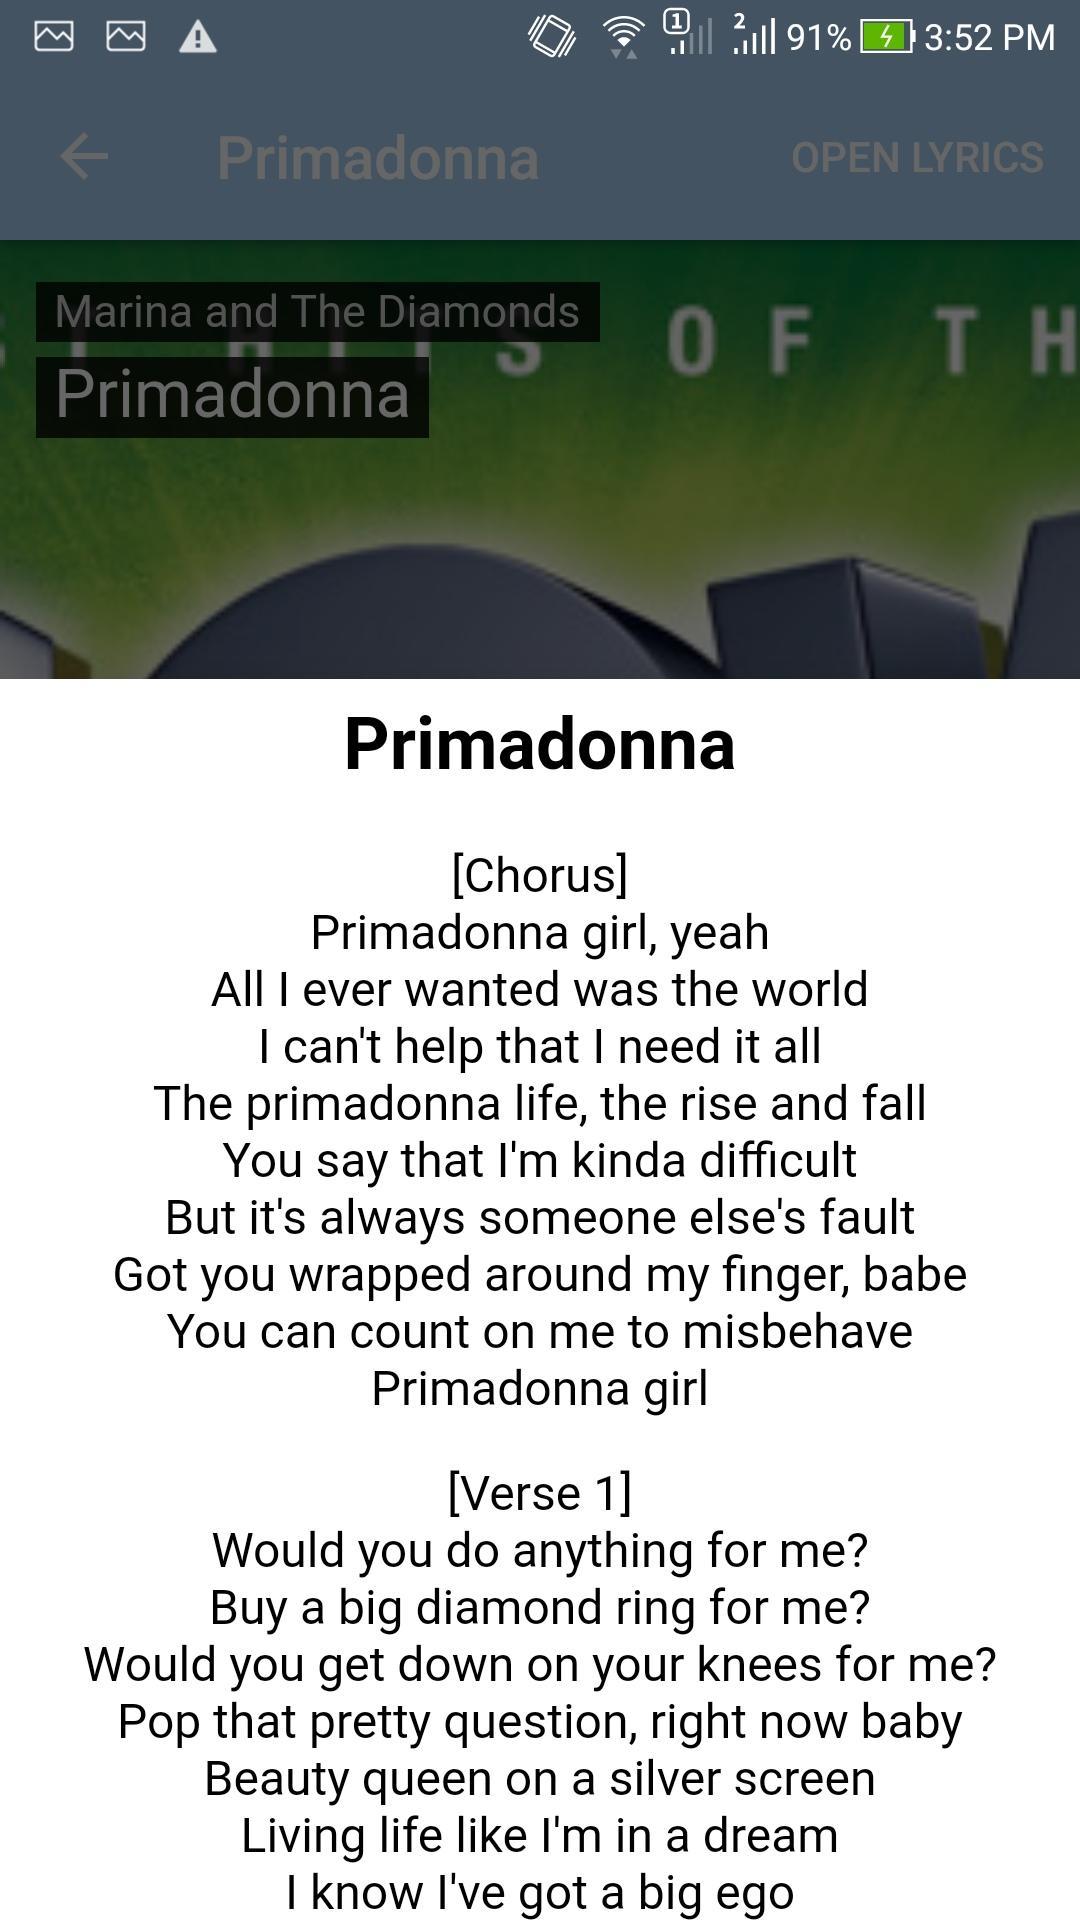 Primadonna girl lyrics